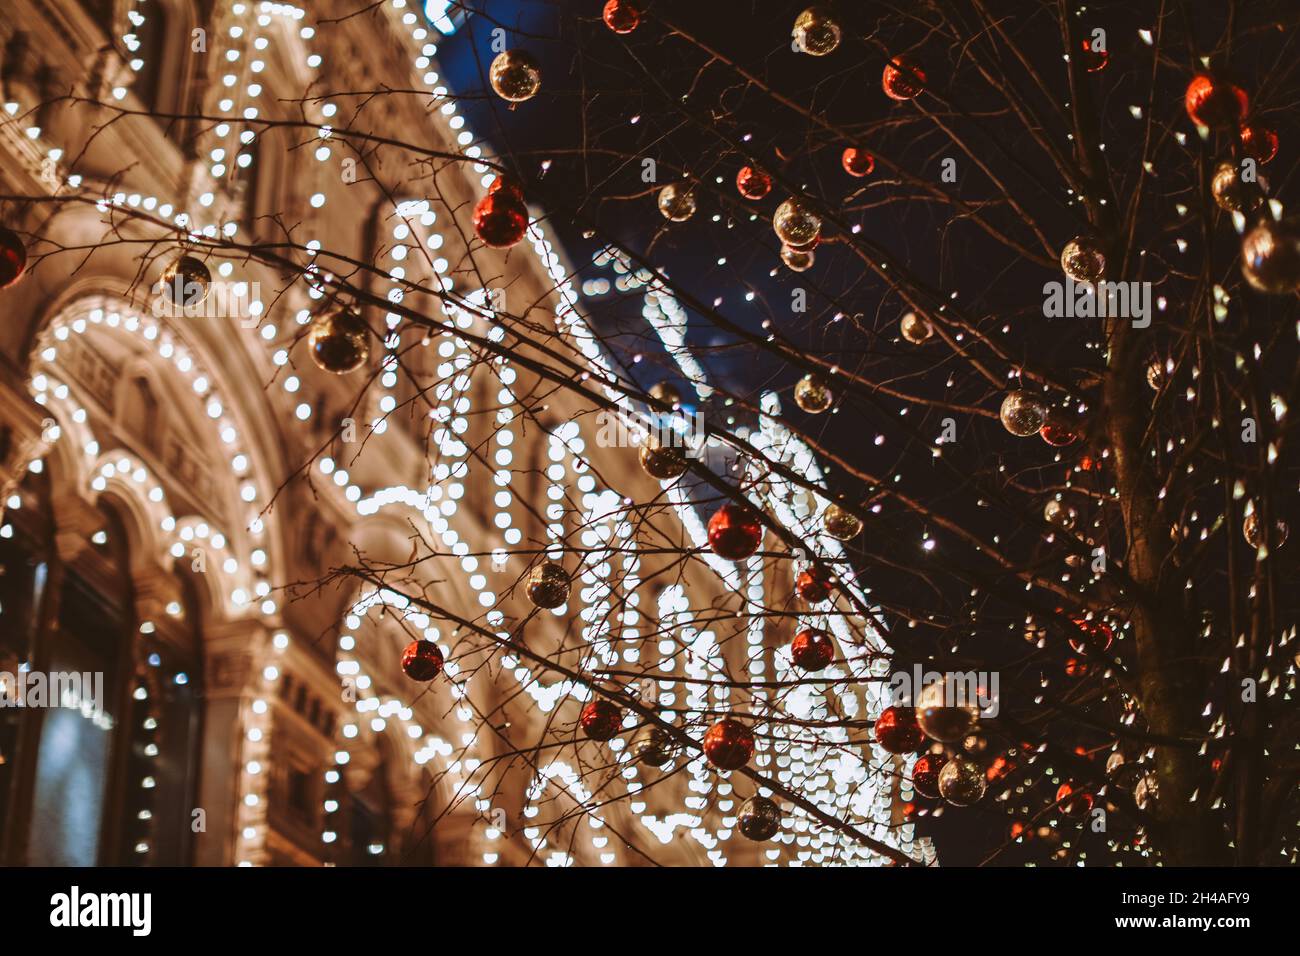 Weihnachten und Neujahr in Moskau. Nachtlicht scheint und leuchtet in der Nähe VON KAUGUMMI. Stadtstraße für Weihnachten dekoriert. Winterliches Stadtbild Stockfoto